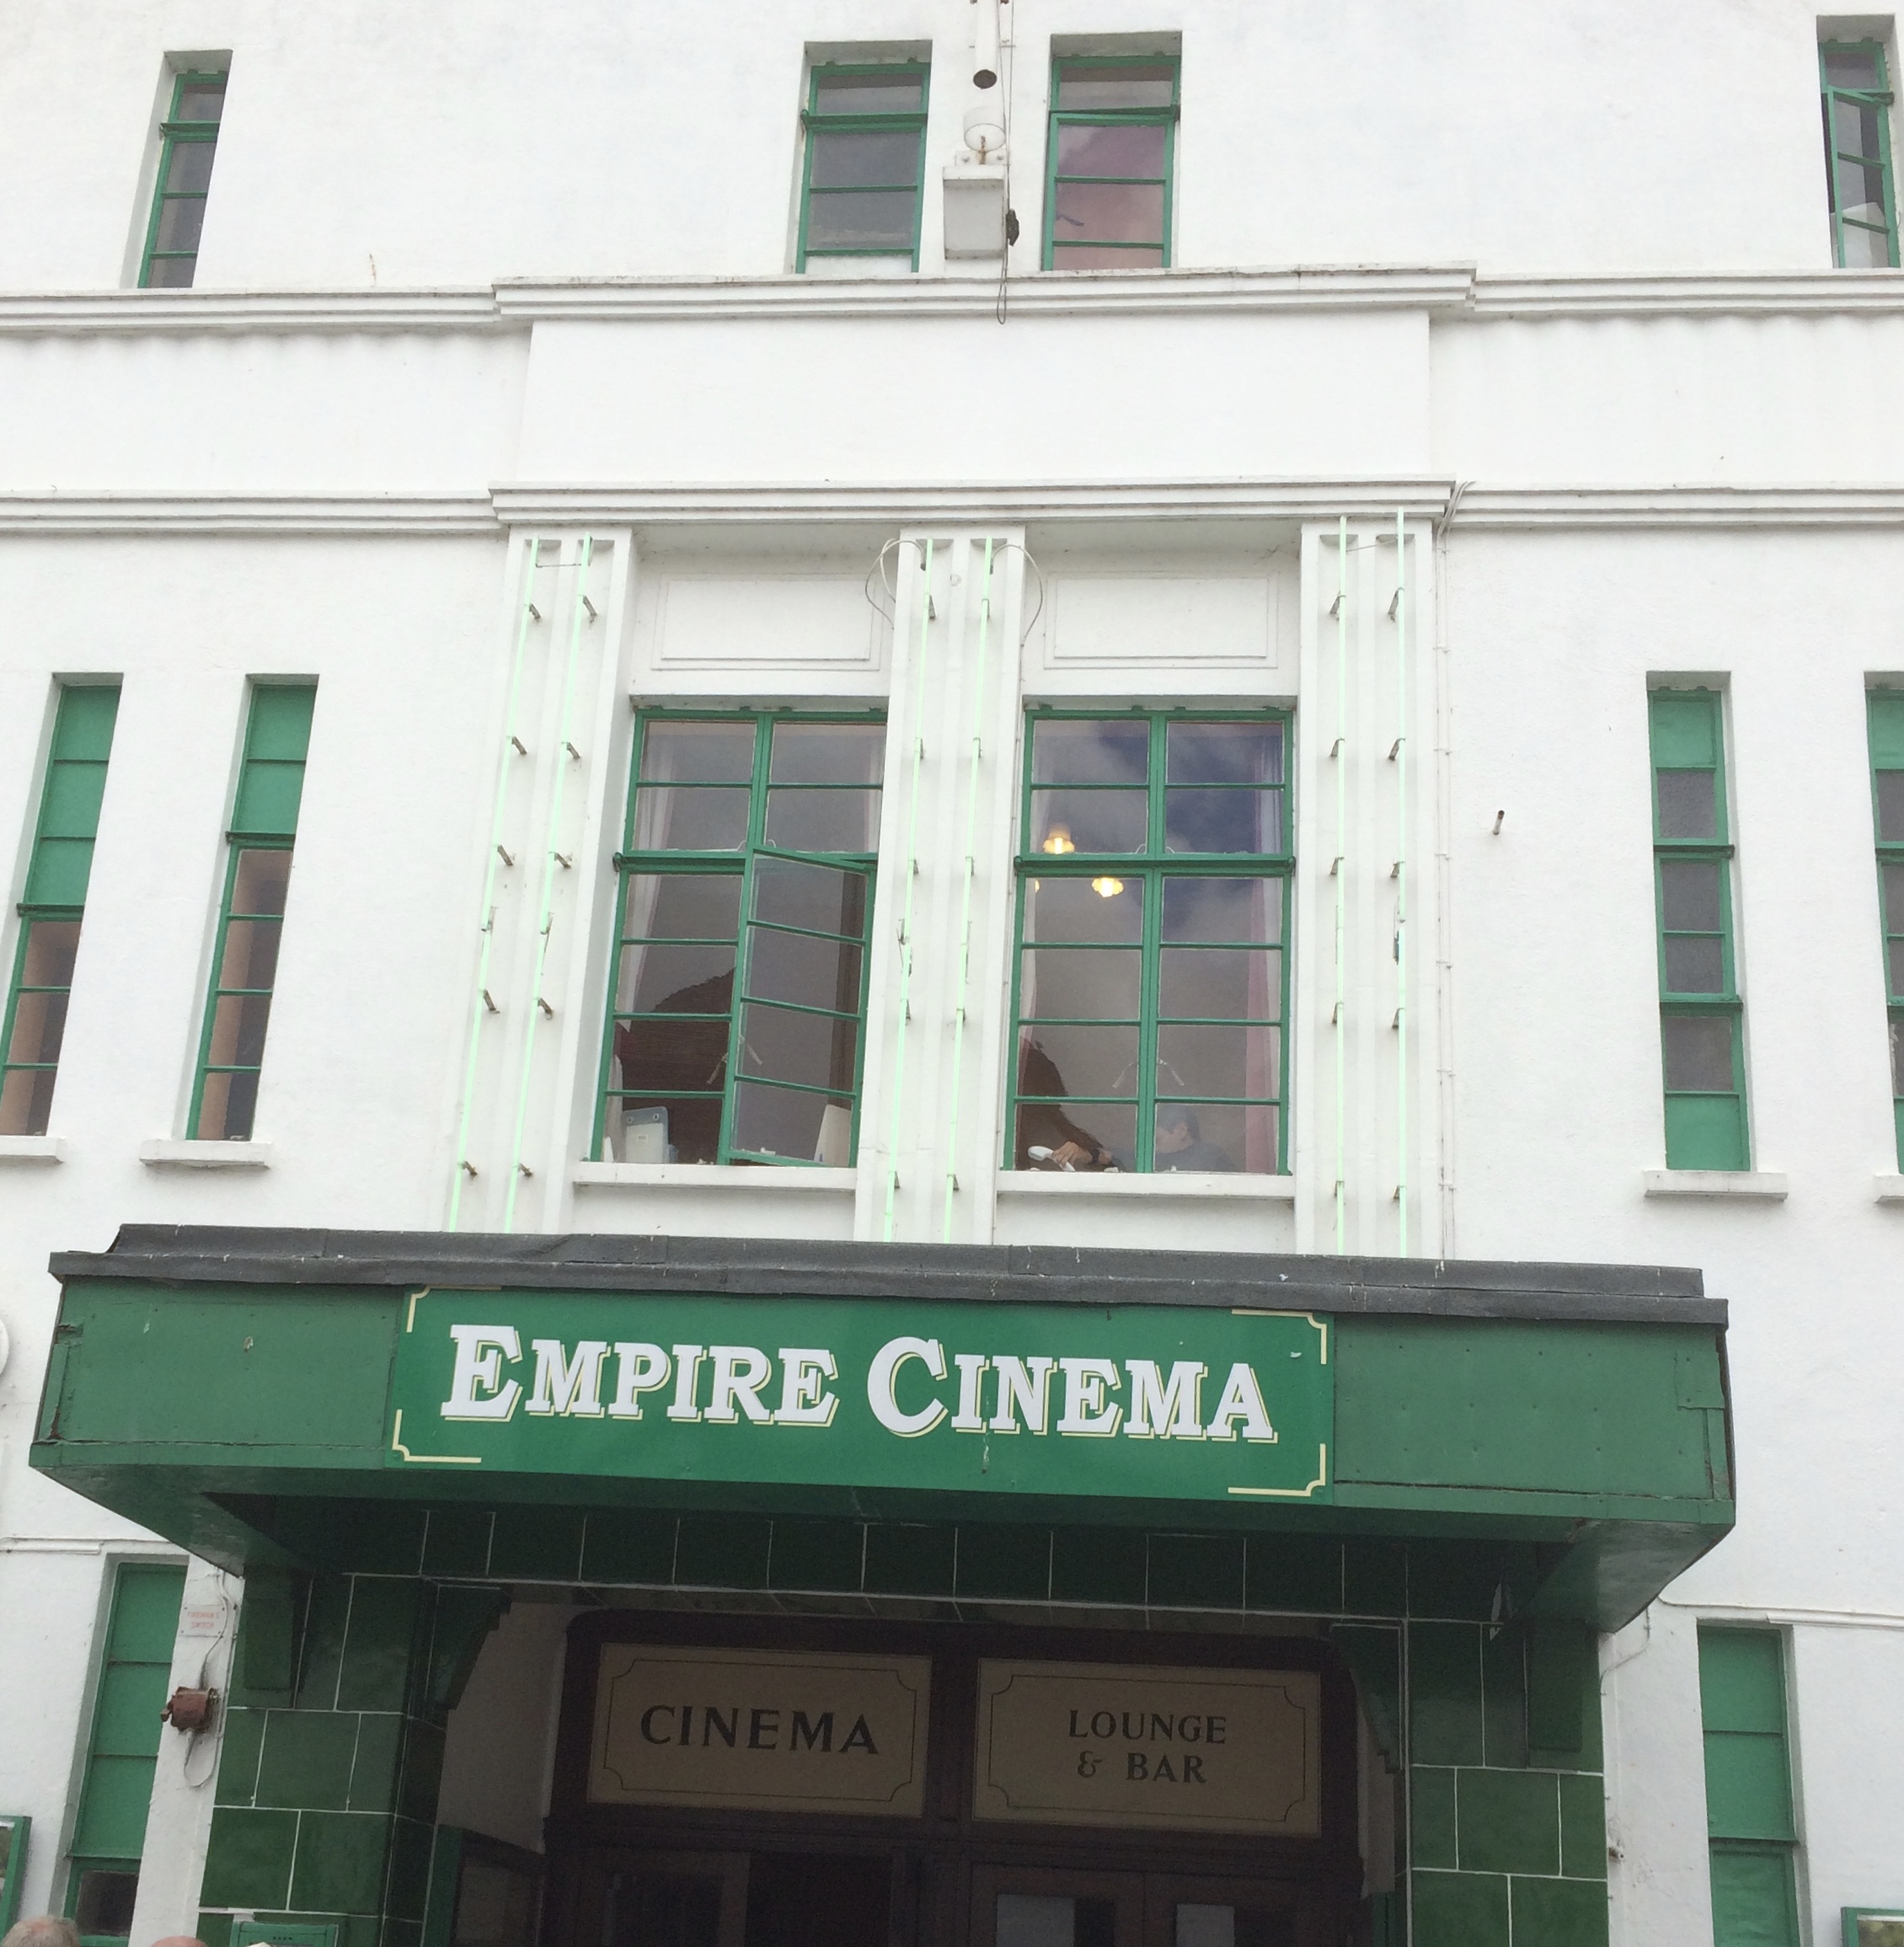 Kitchener camp, Empire cinema, Sandwich 2017